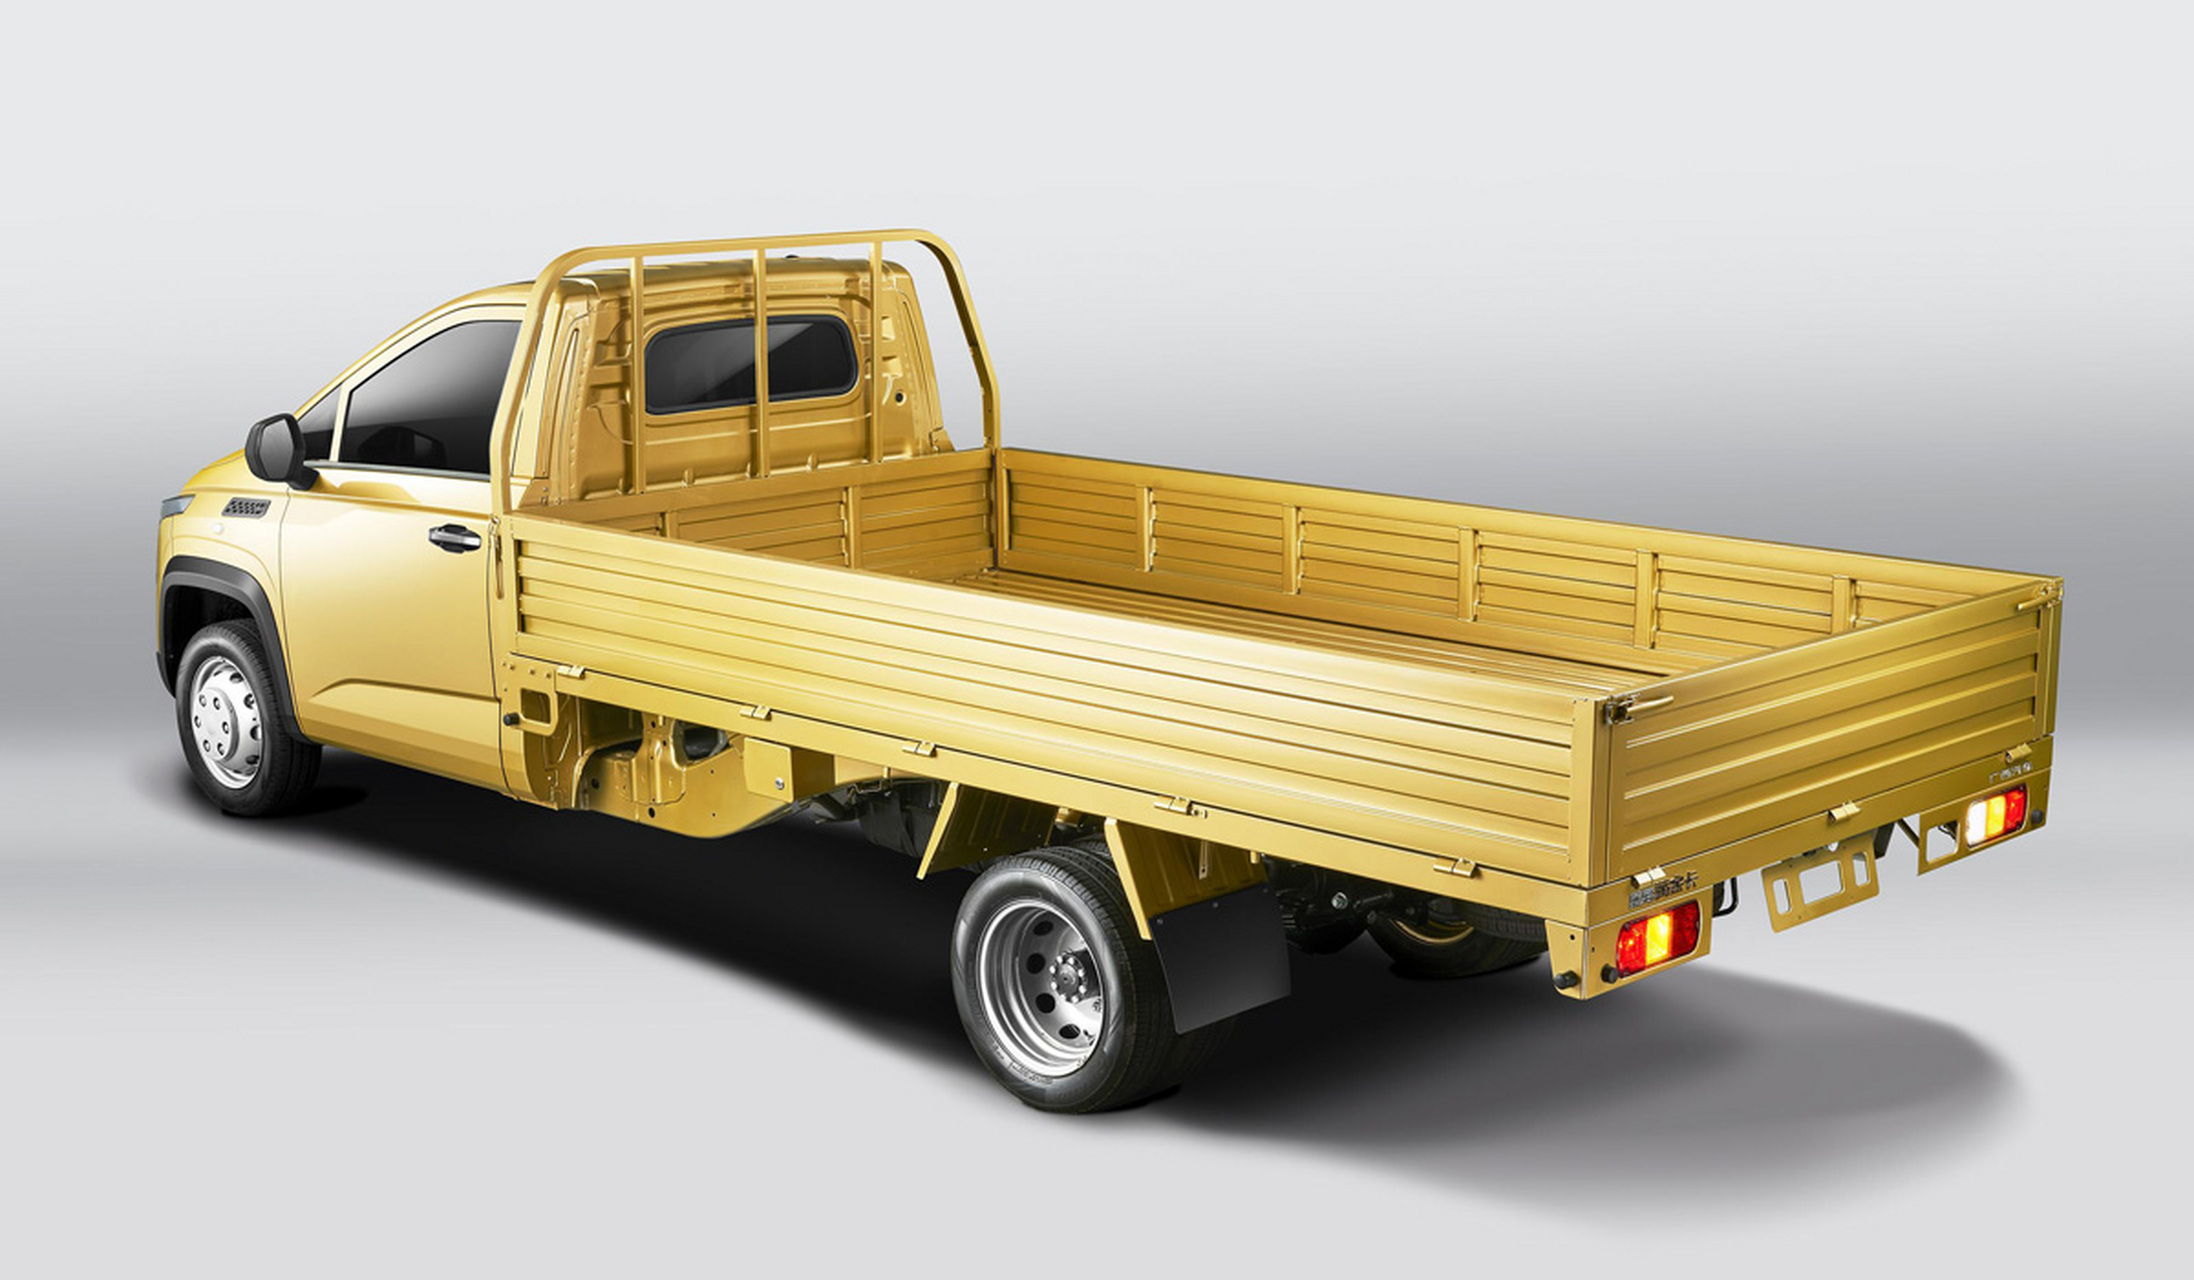 【10万元混动卡车】上汽通用五菱推出了一款新品牌linxys轻型卡车,车